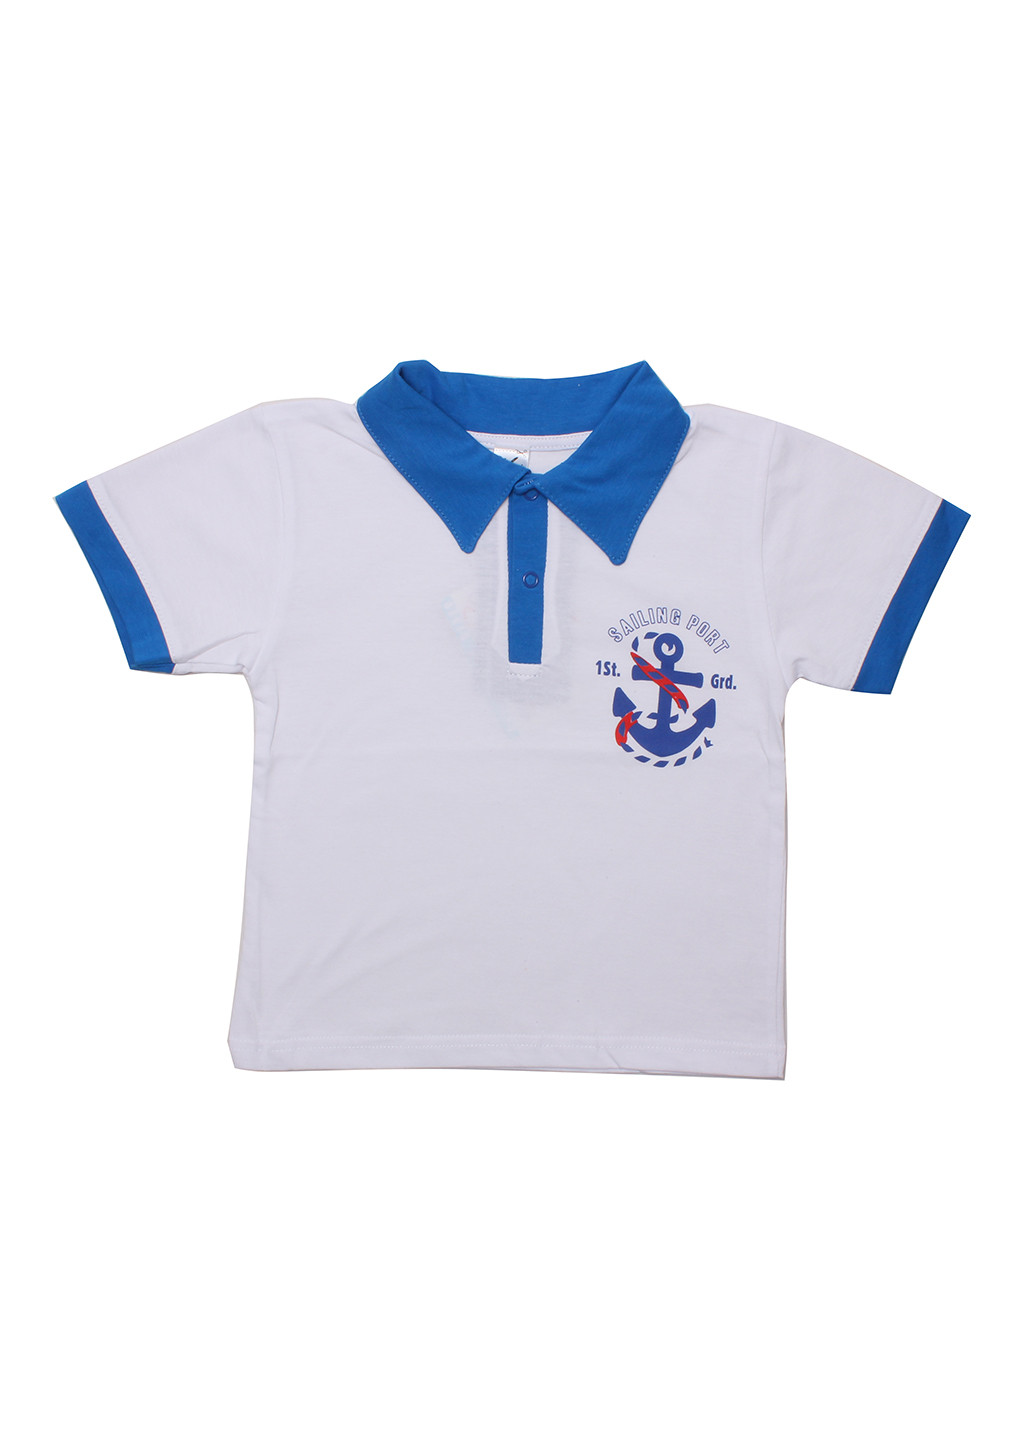 Белая детская футболка-поло для мальчика Валери-Текс с рисунком